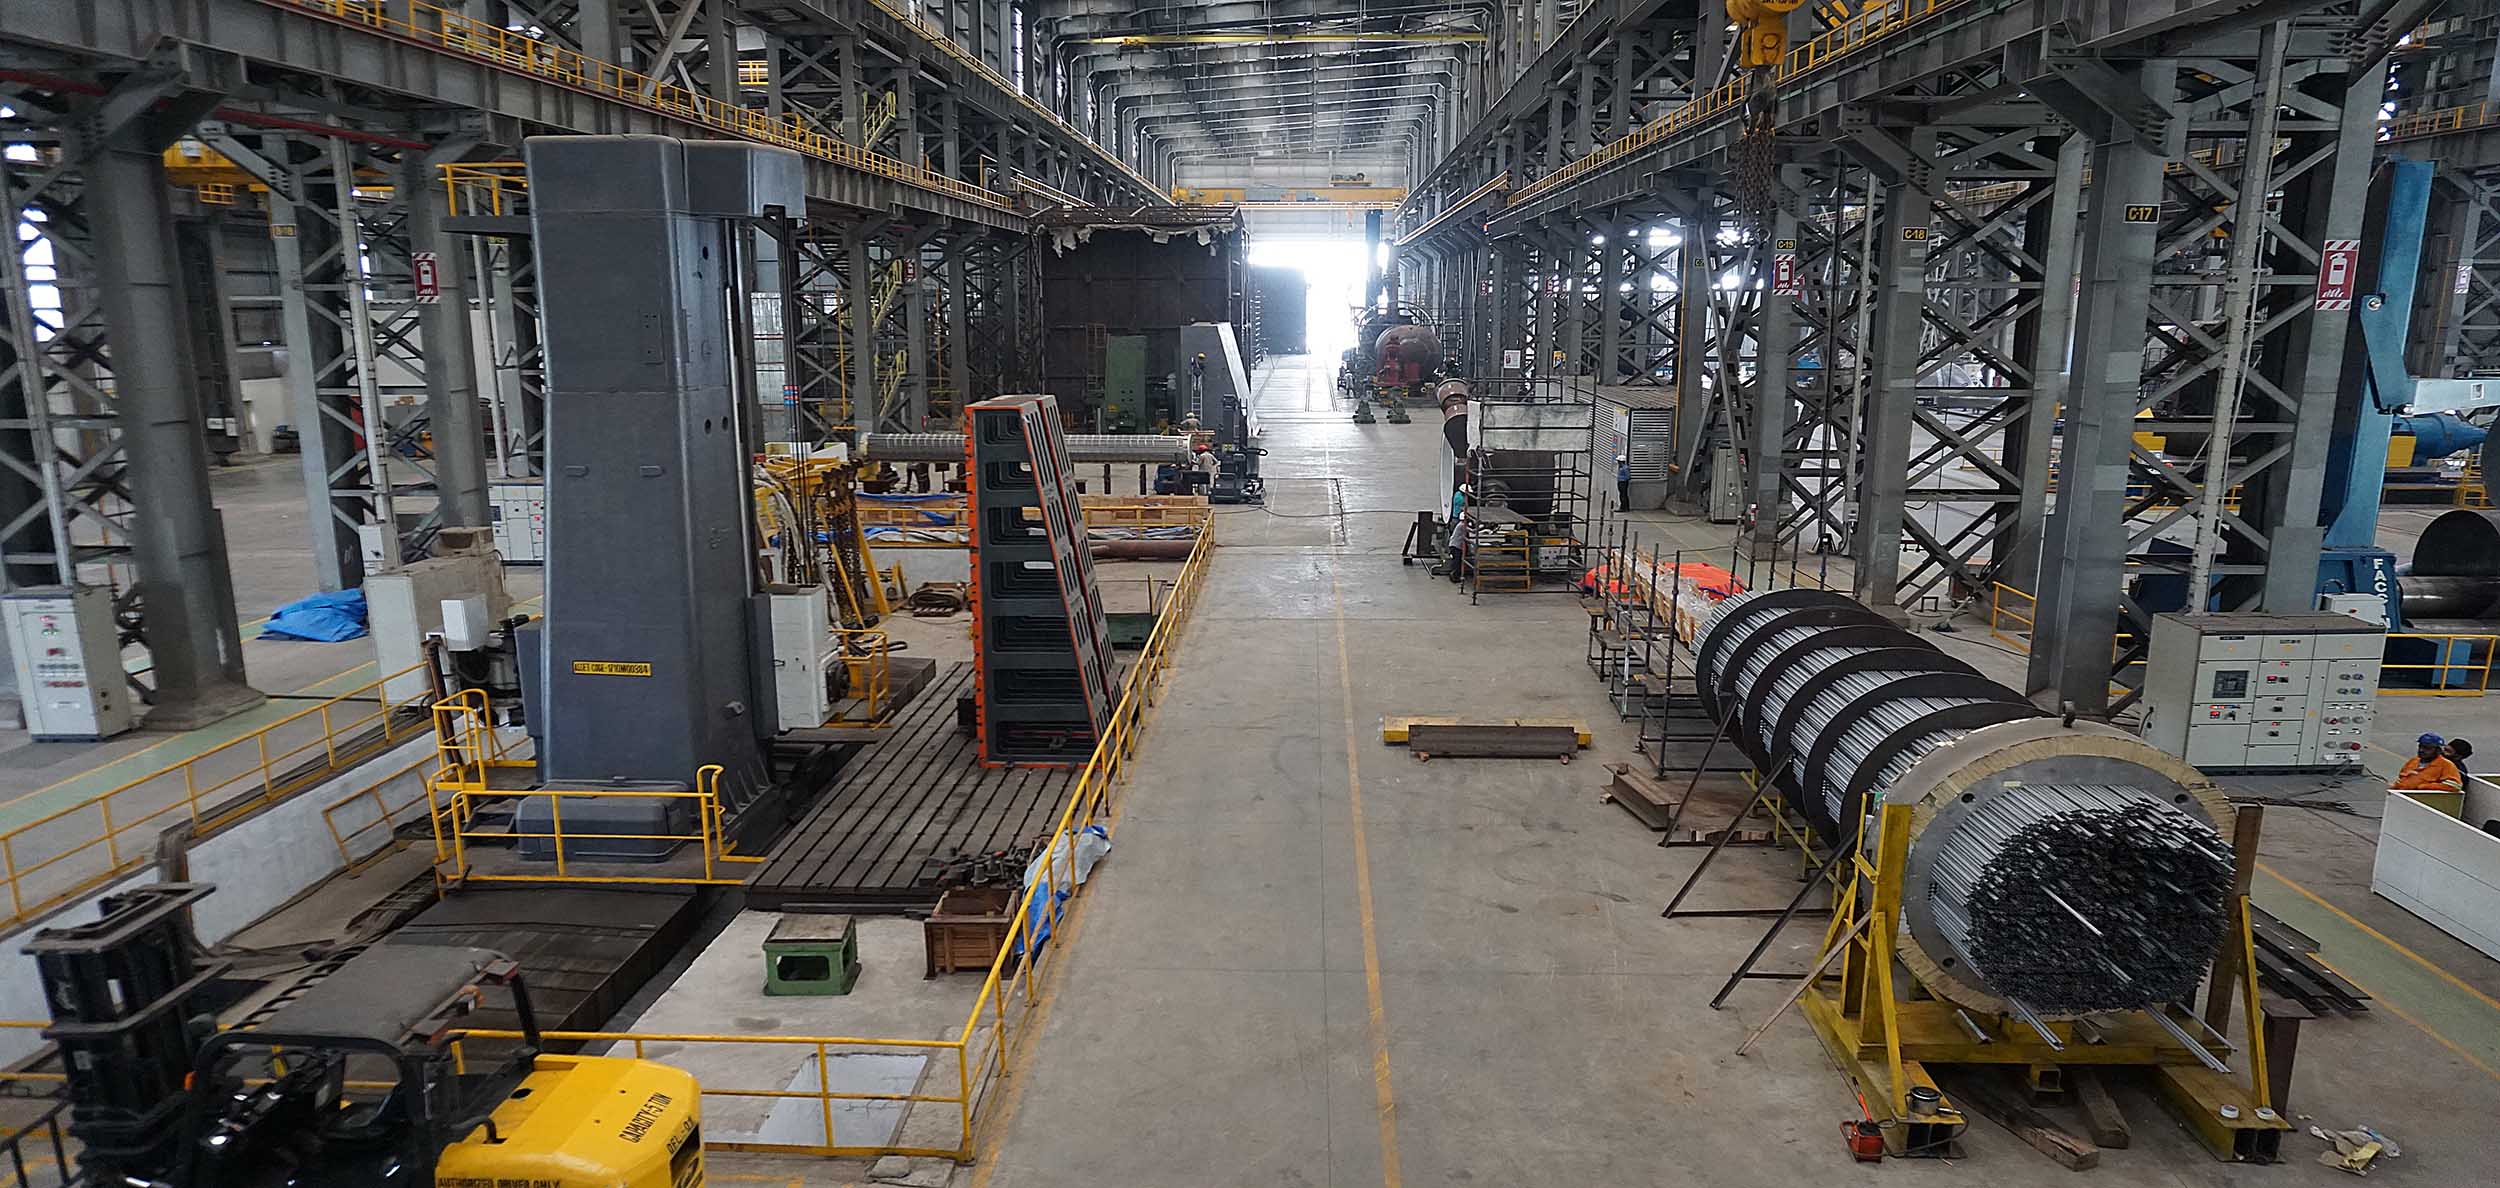 Godrej Process Equipment to invest Rs 300 crore to expand Dahej plant